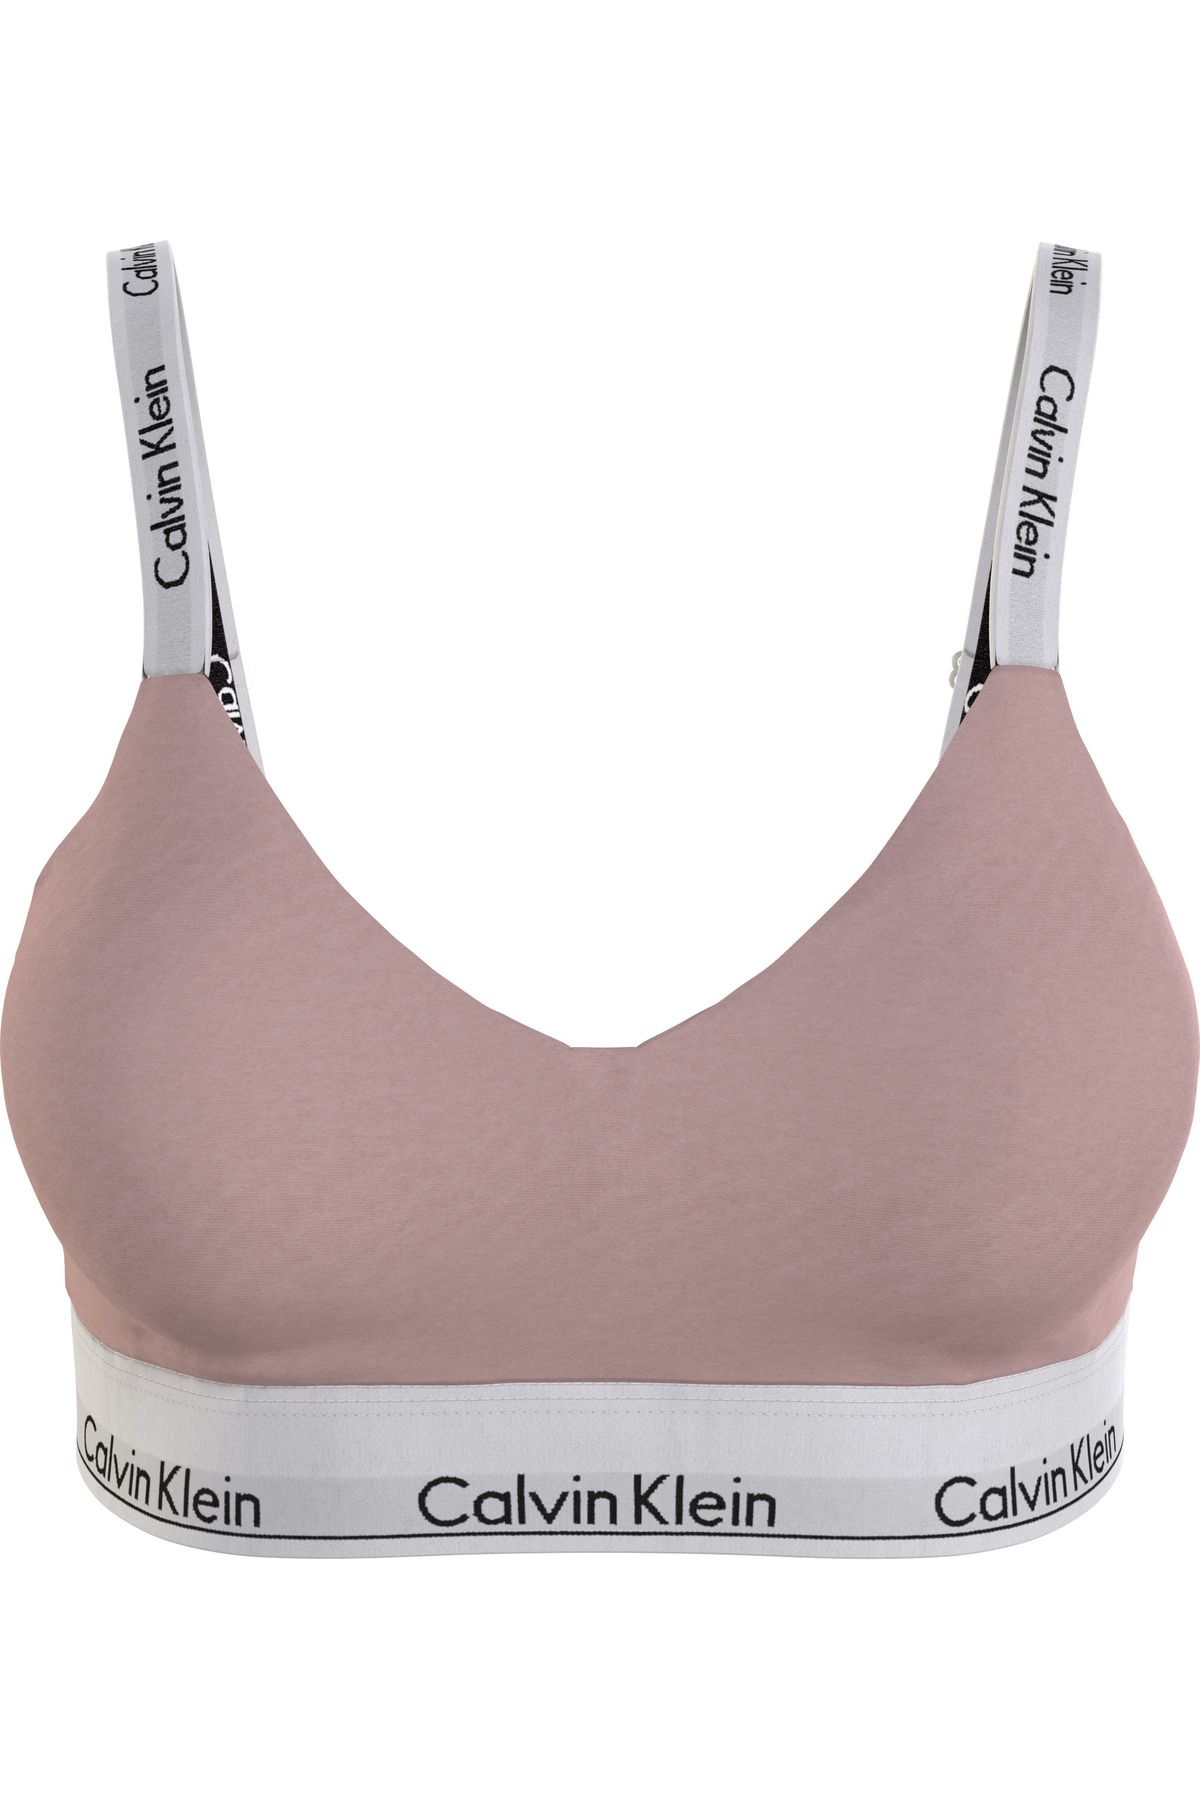 Calvin Klein Kadın Marka Logolu Elastik Bantlı Günlük Kullanıma Uygun Pudra Spor Sütyeni 000qf7059e-tqo